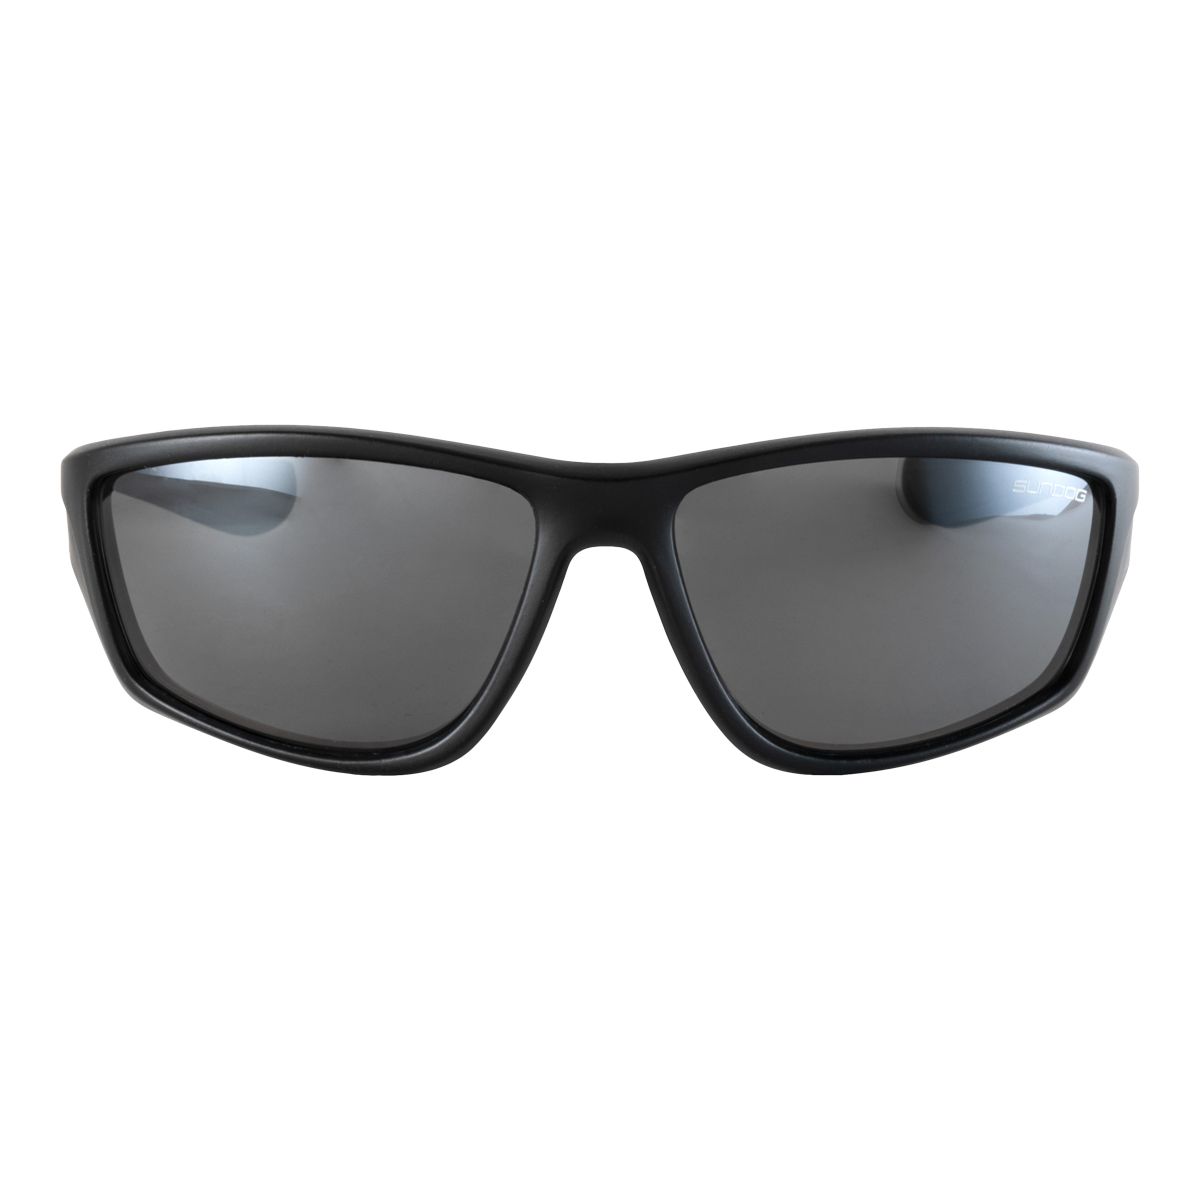 SUNDOG EYEWEAR  Polarized, Sport, and Lifestyle Sunglasses